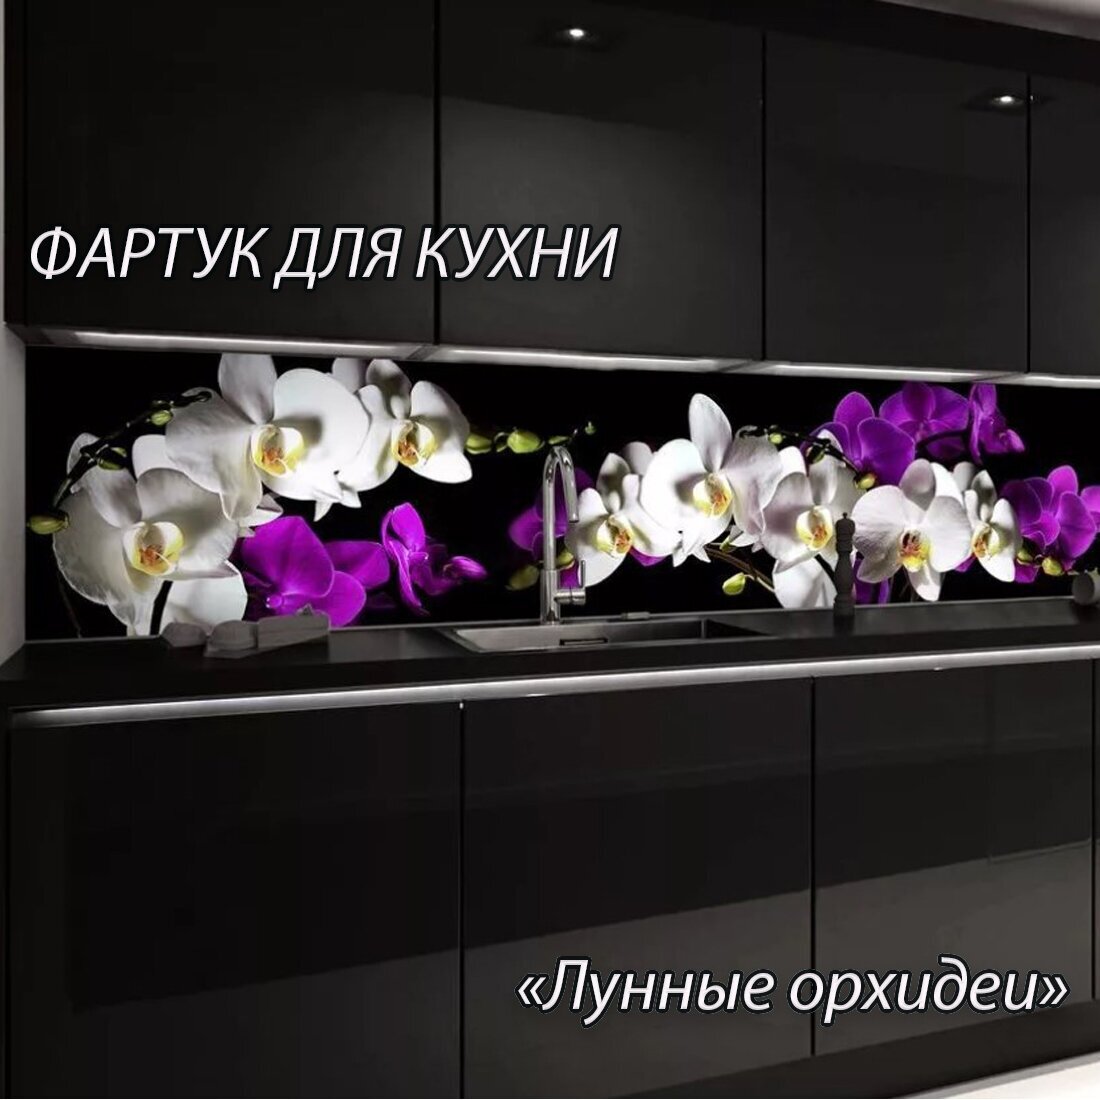 Фартук для кухни из АБС пластика "Лунные орхидеи" 4000*600*1,5мм. Кухонный фартук ABS с фотопечатью.